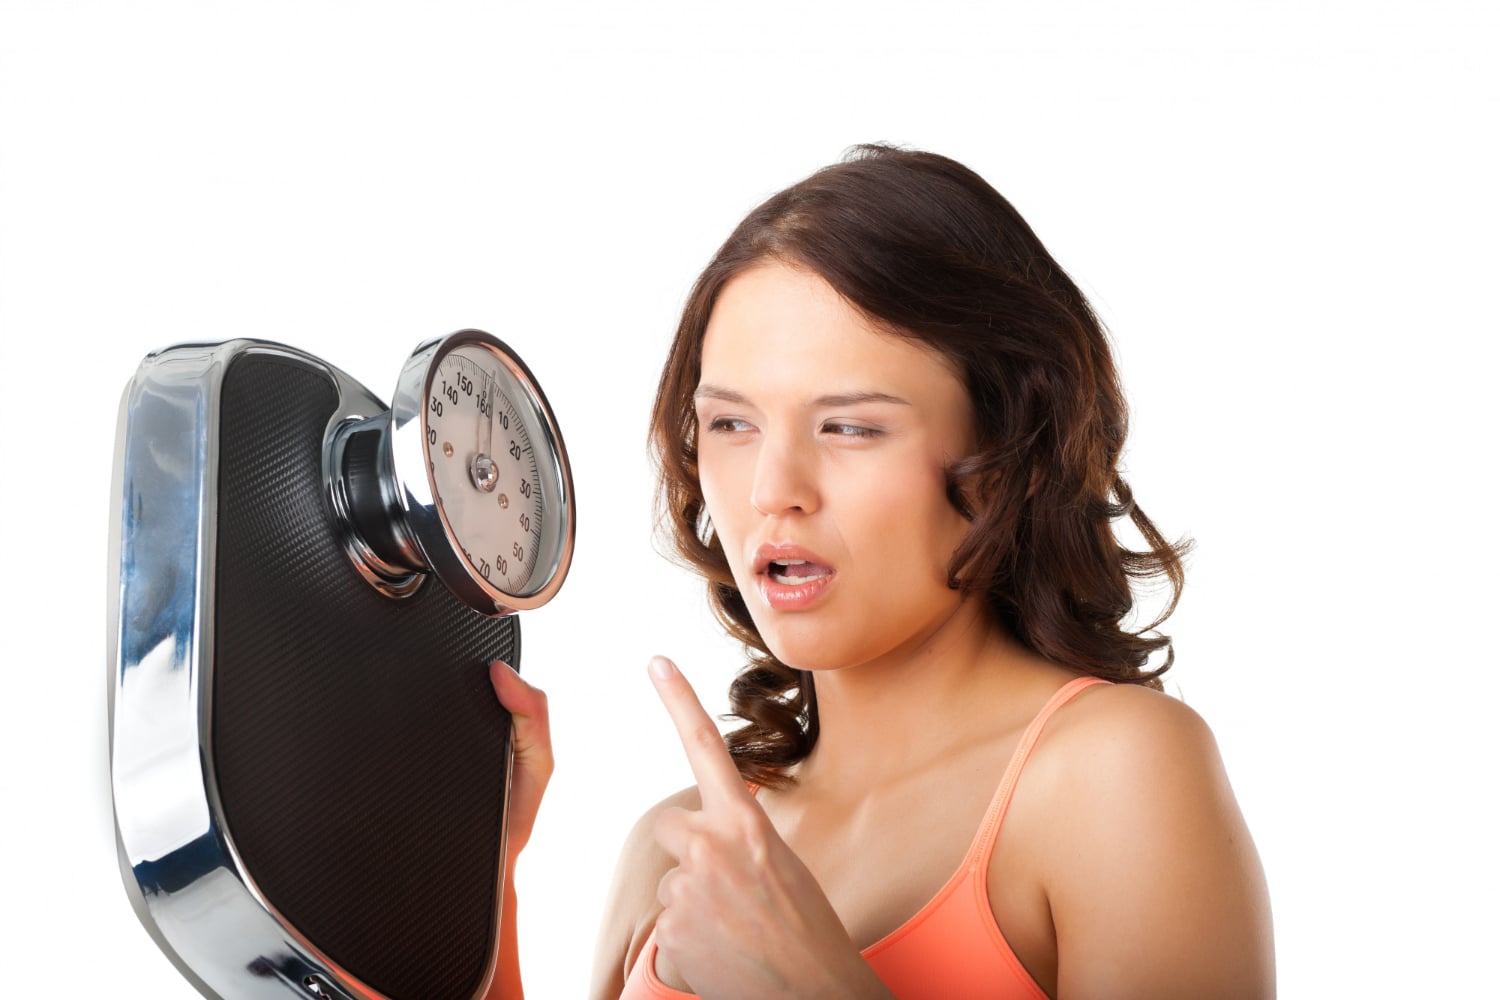 Kobieta na diecie z waga w ręku która za wszelką cenę pragnie uniknąć efektu jojo